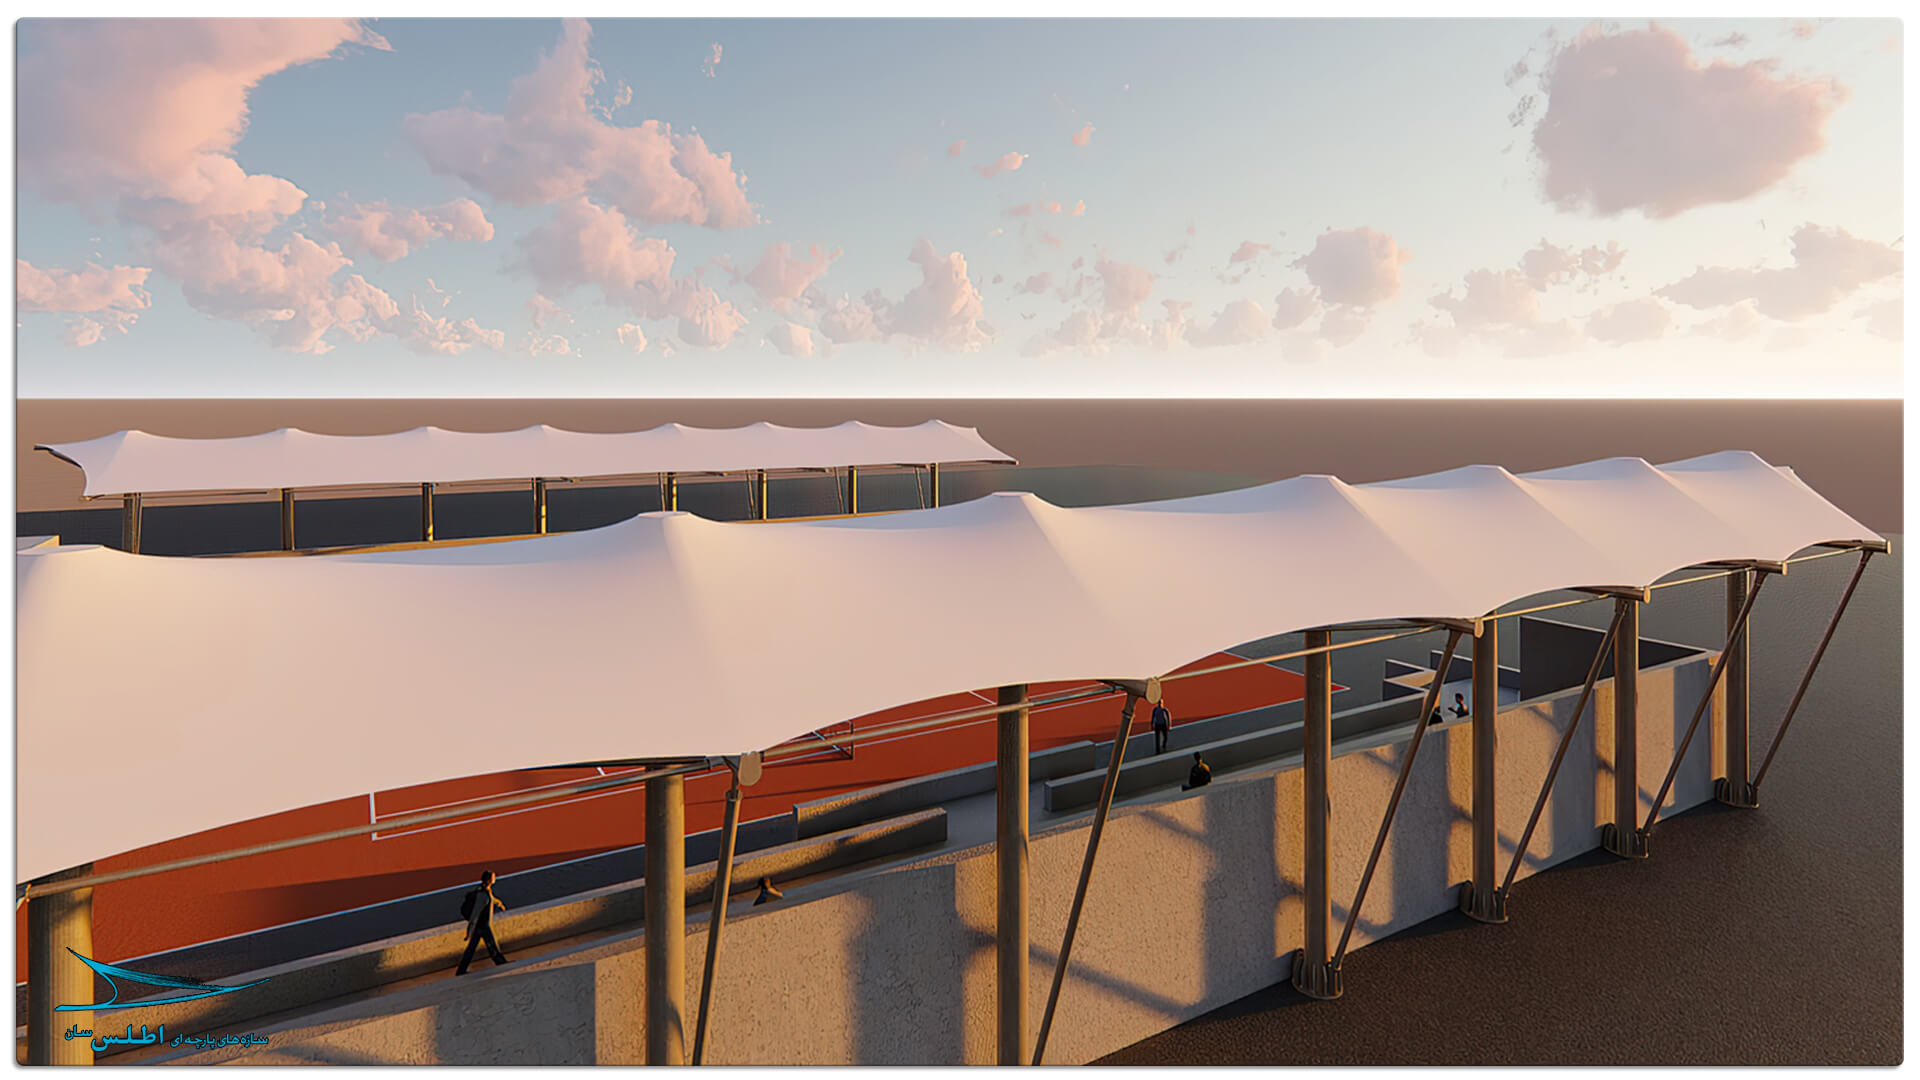 رندر و مدل سازی سه بعدی سازه پارچه ای سقف استادیوم تنیس کیش | سازه پارچه ای اطلس سان